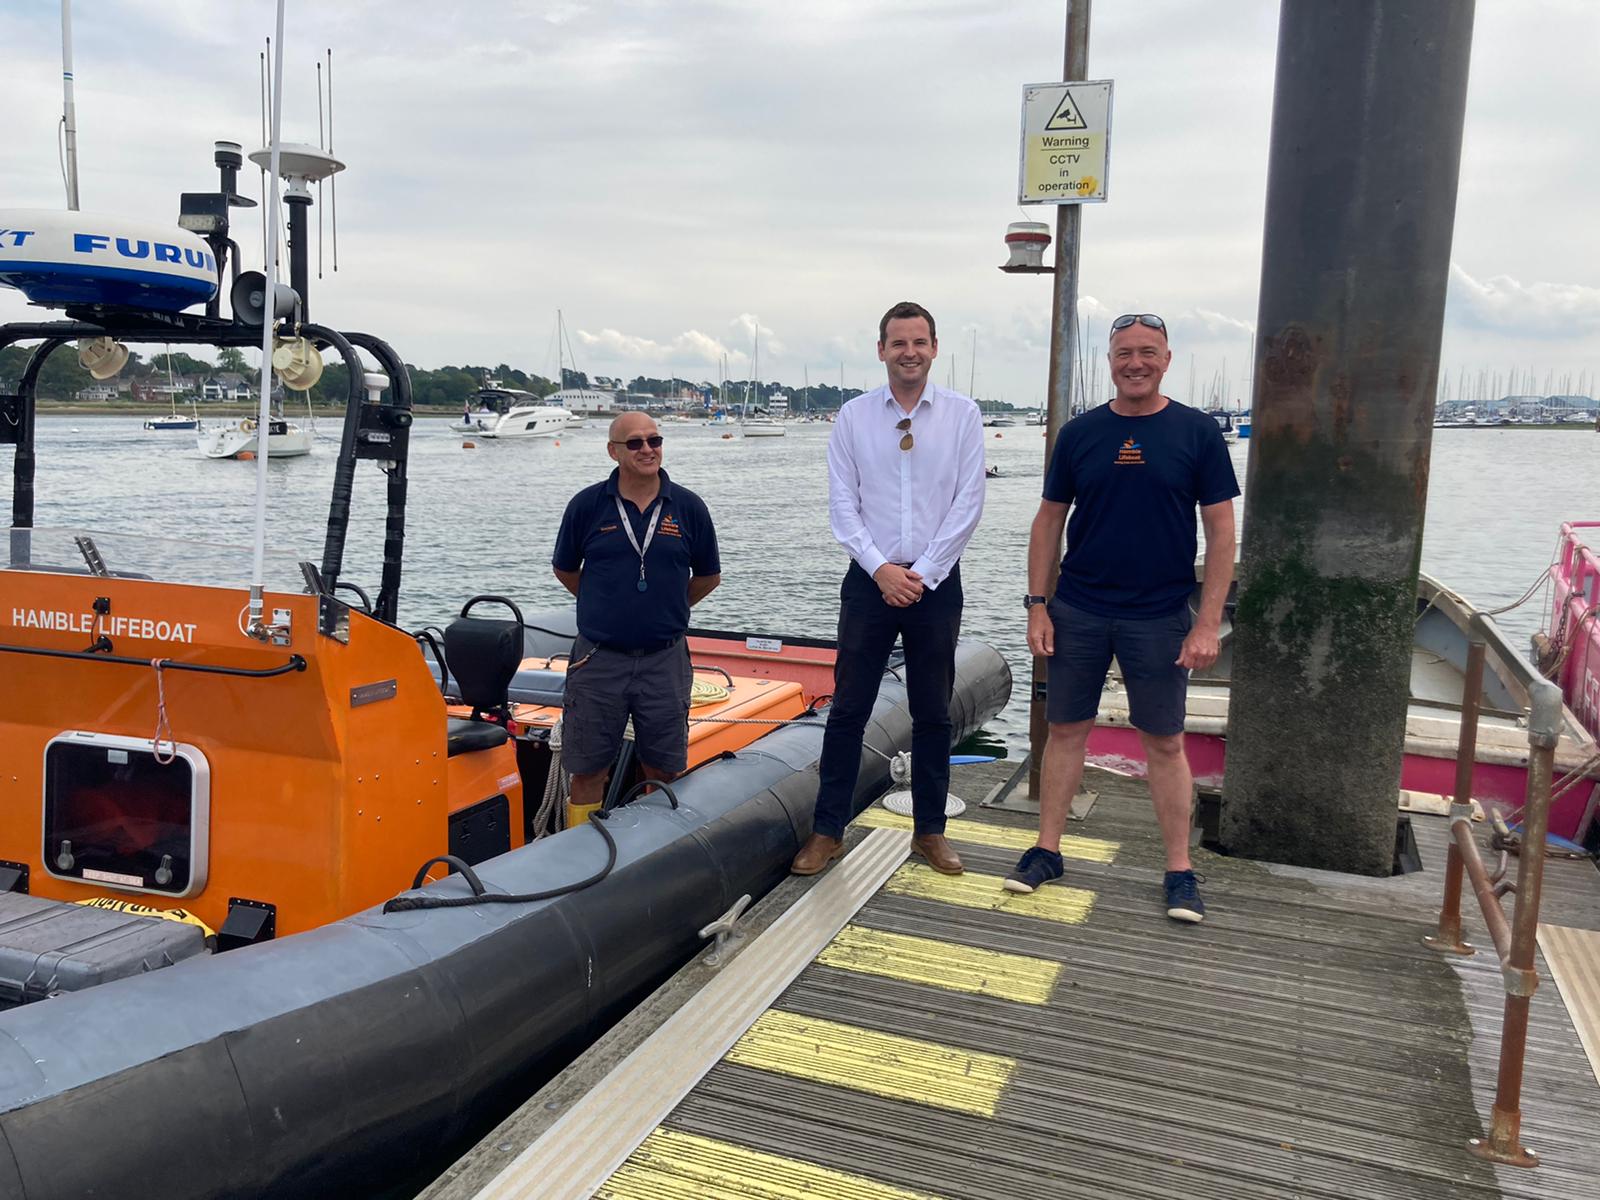 Paul Visits Hamble Lifeboat Paul Holmes